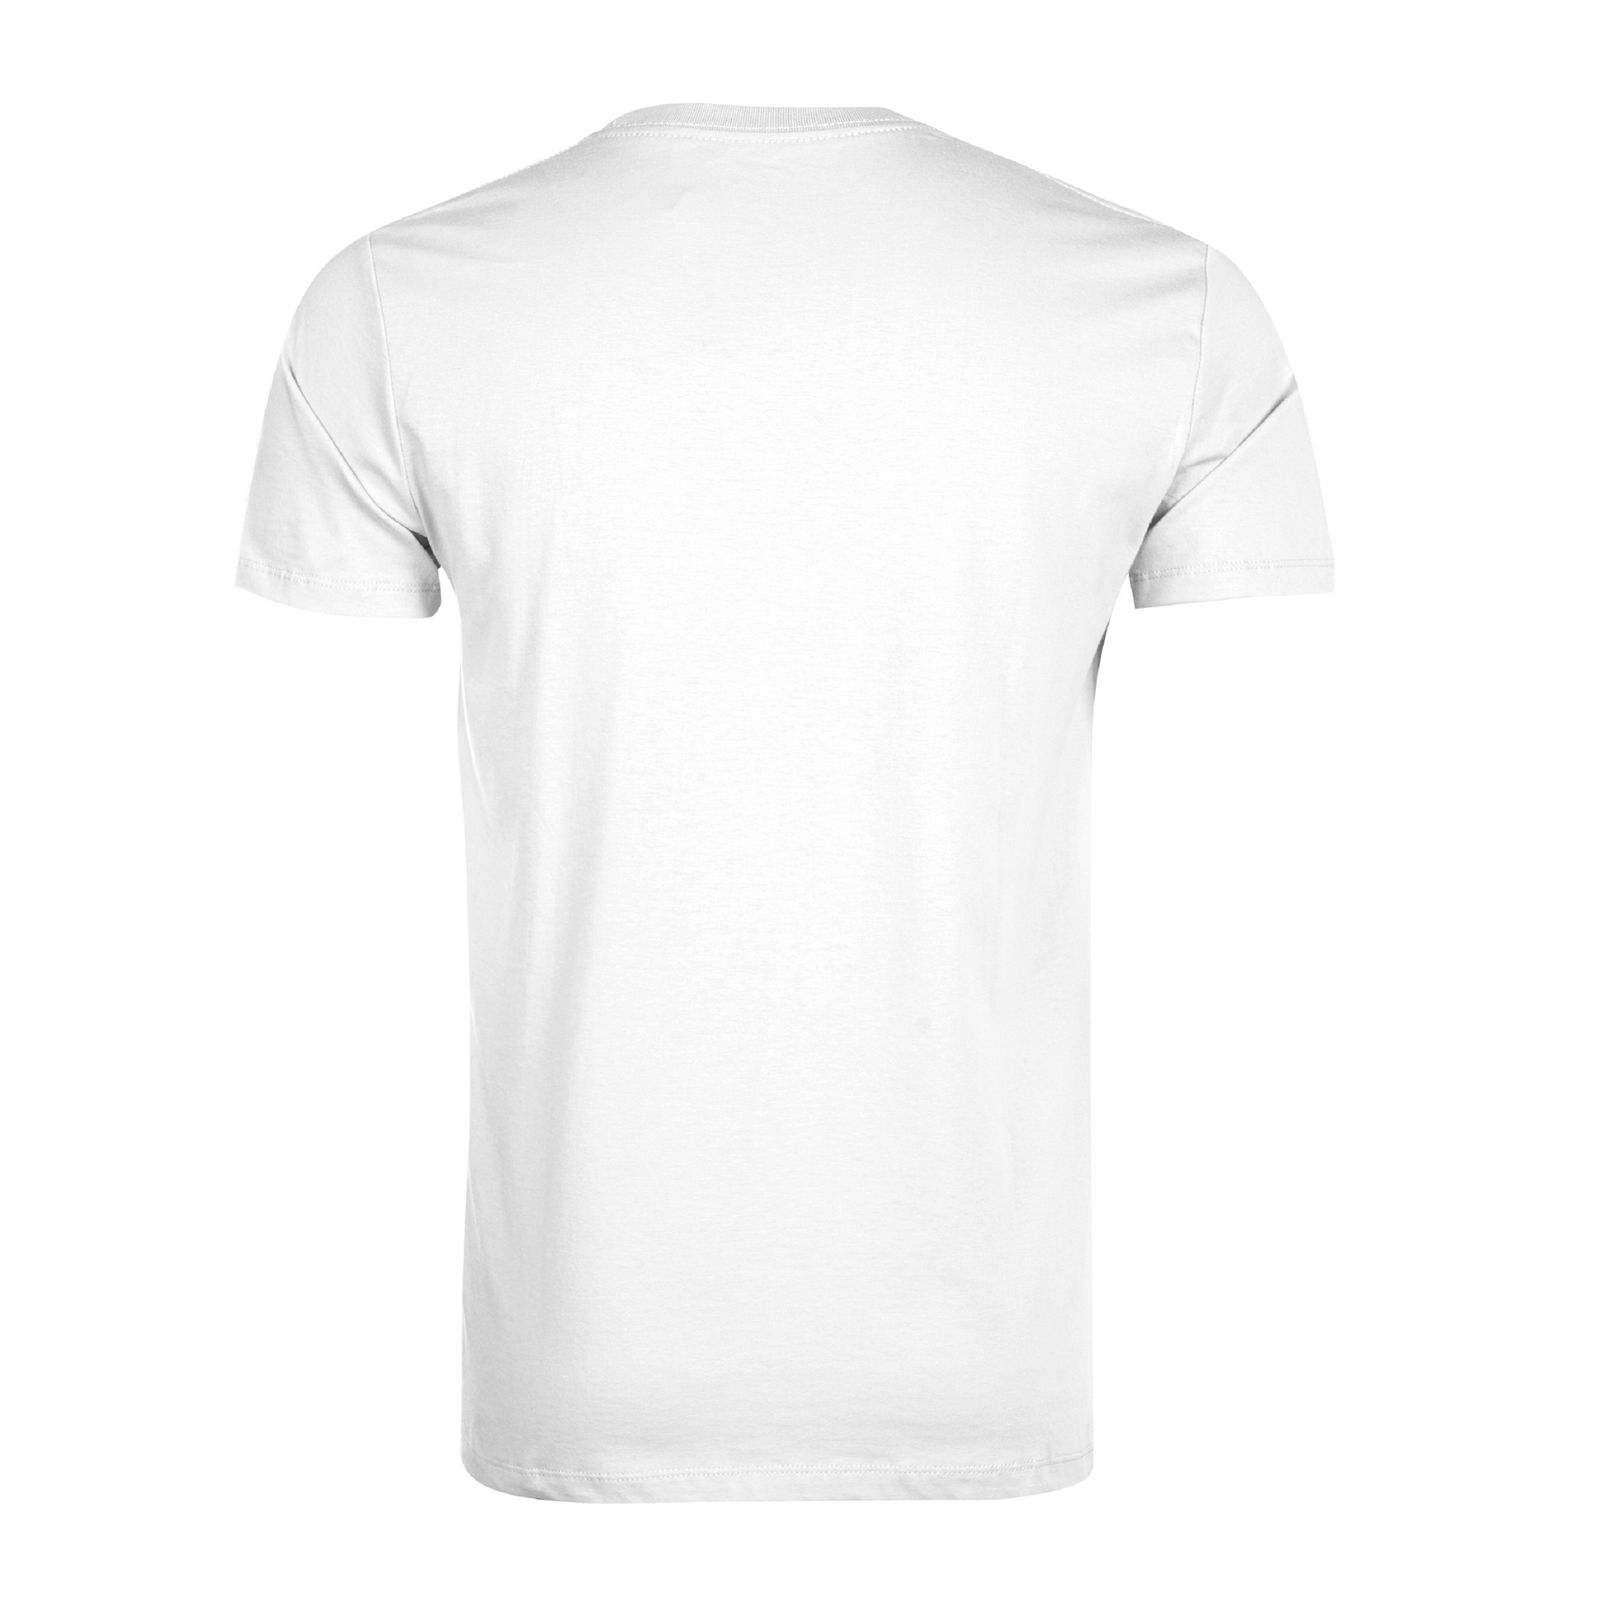 تی شرت آستین کوتاه مردانه جوتی جینز مدل یقه گرد کد 1551204 رنگ سفید -  - 2